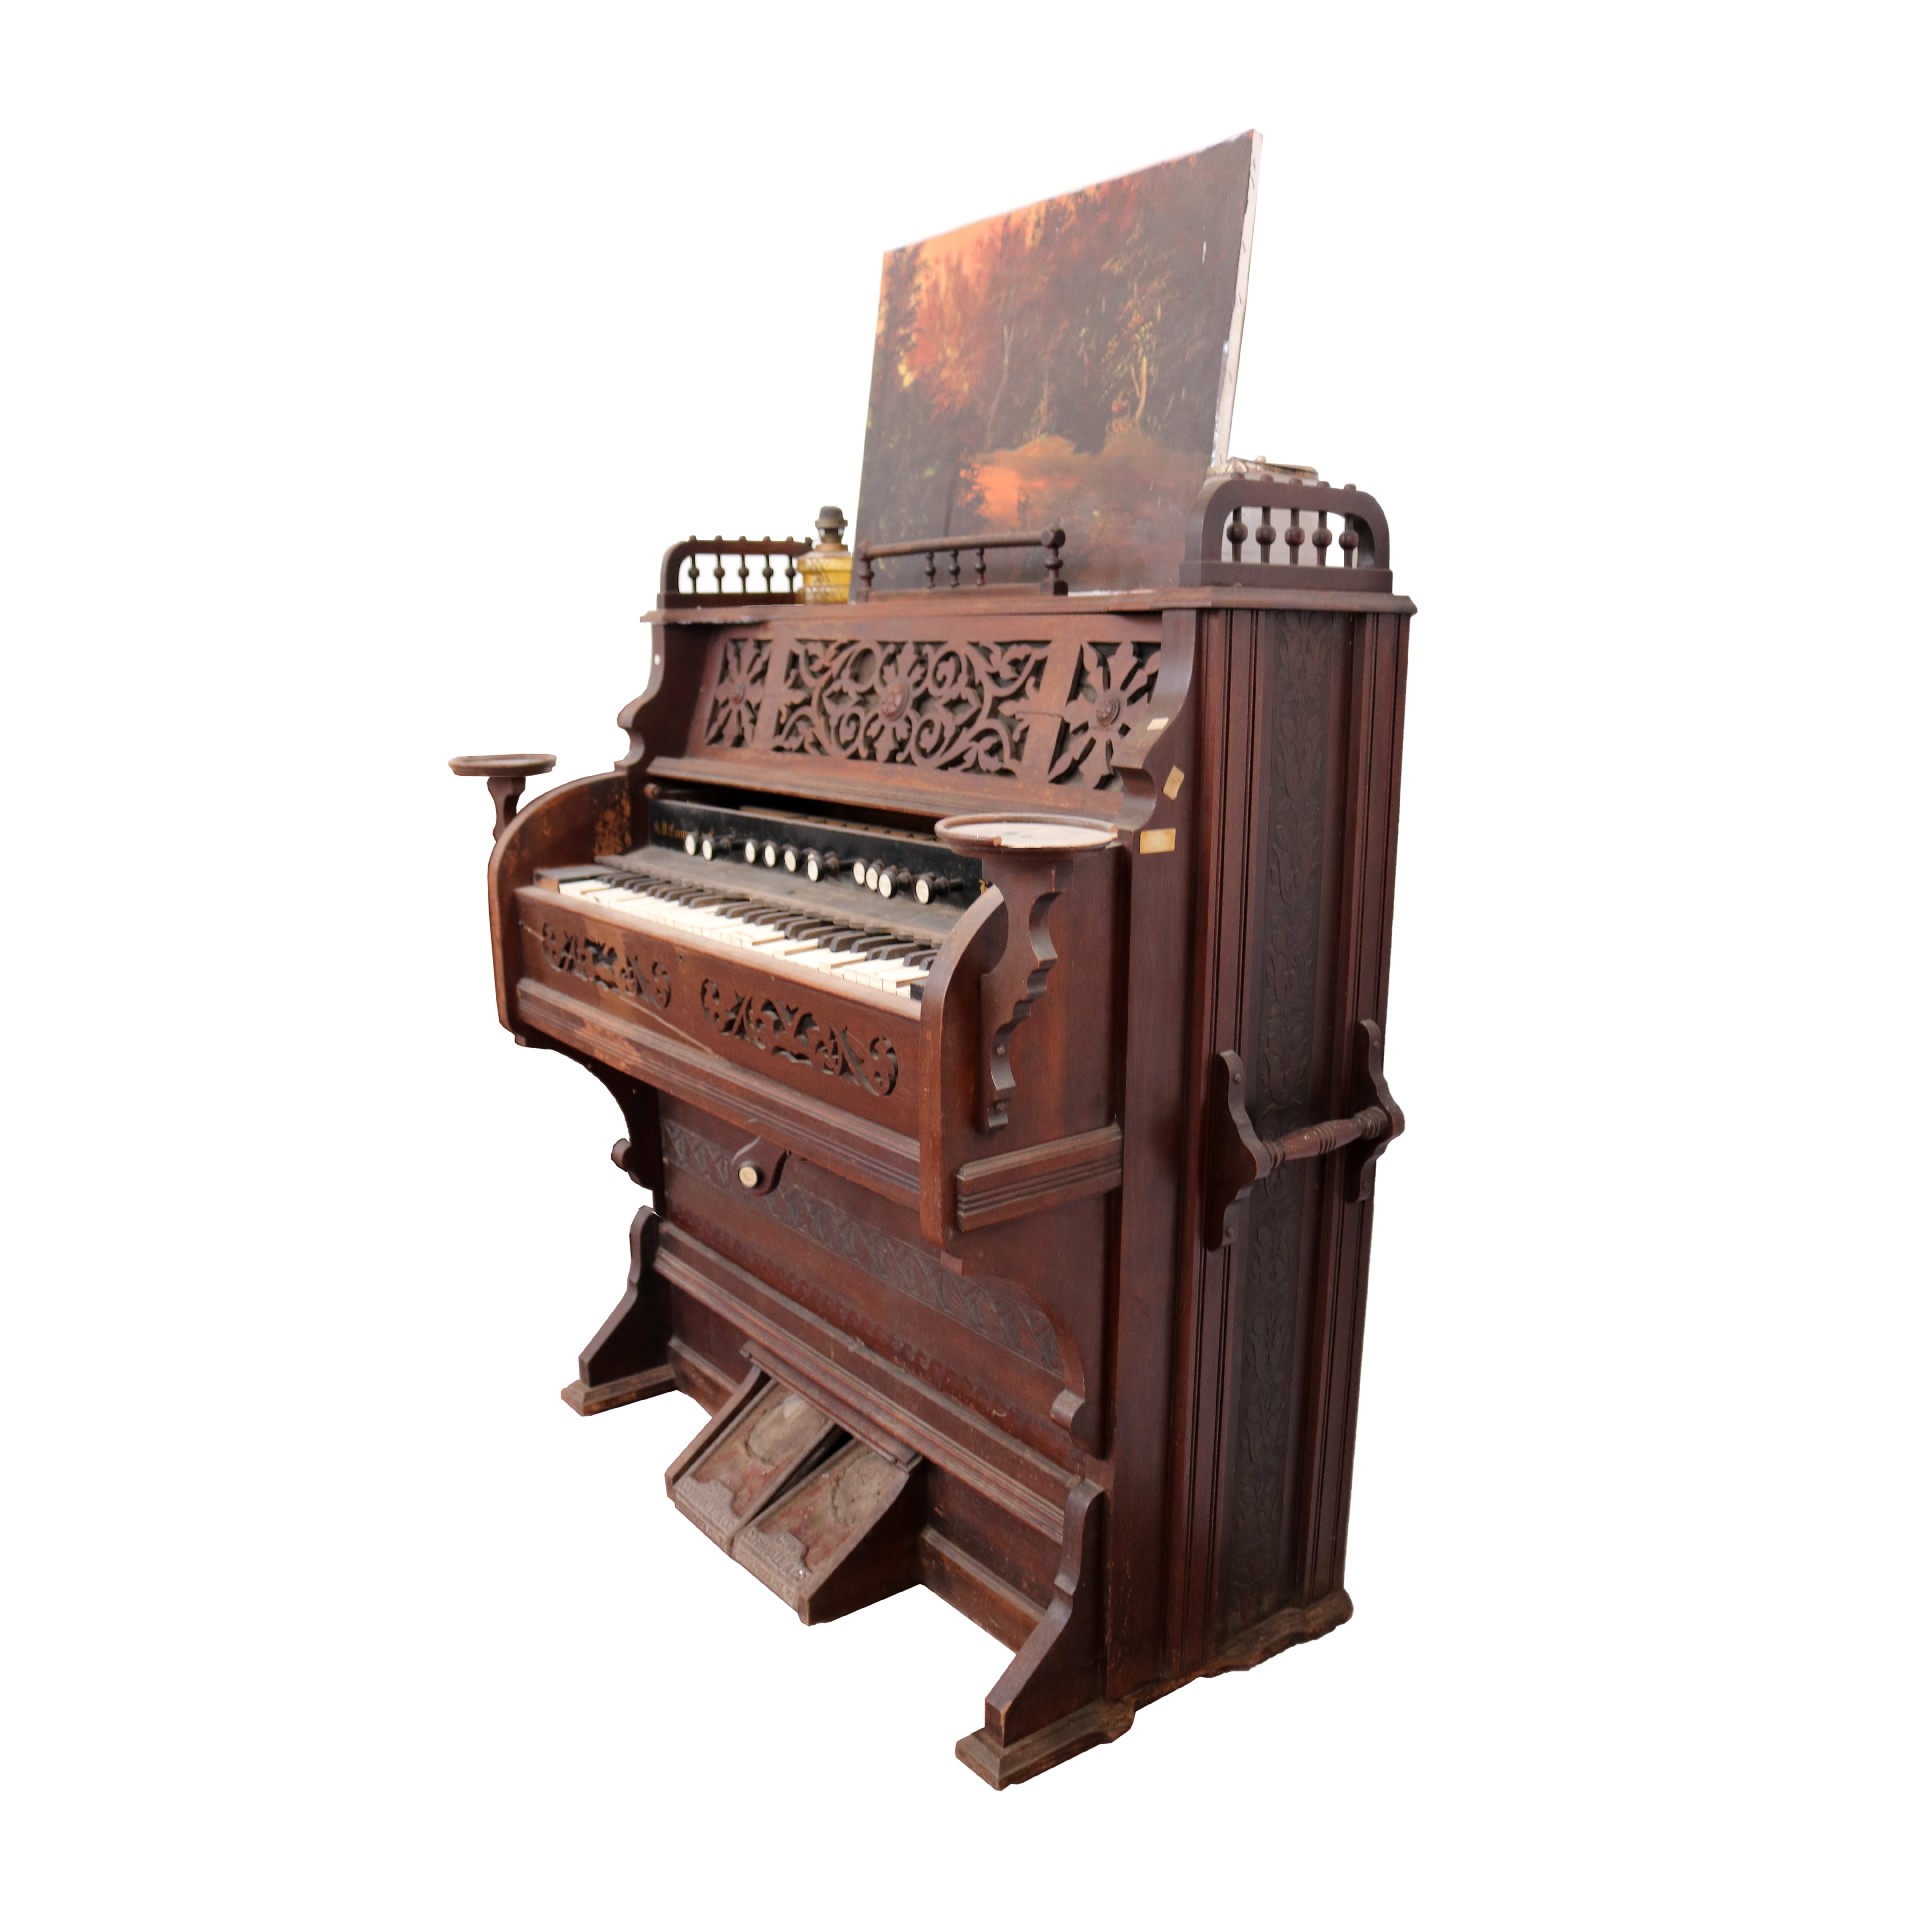 Antico organo in legno. - 1